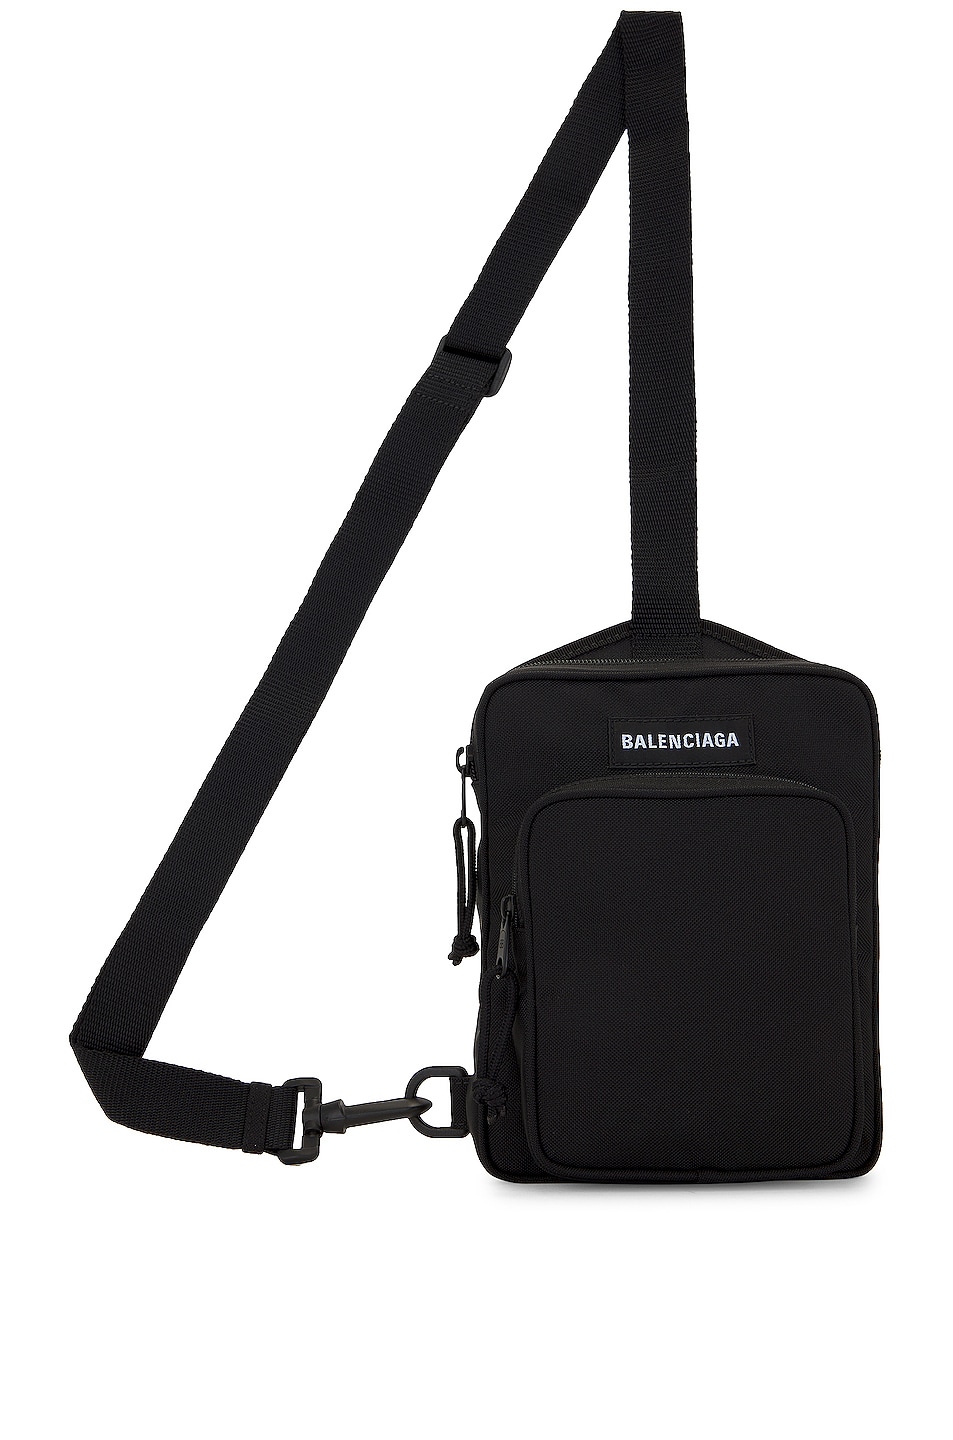 Balenciaga Explorer Bag in Black